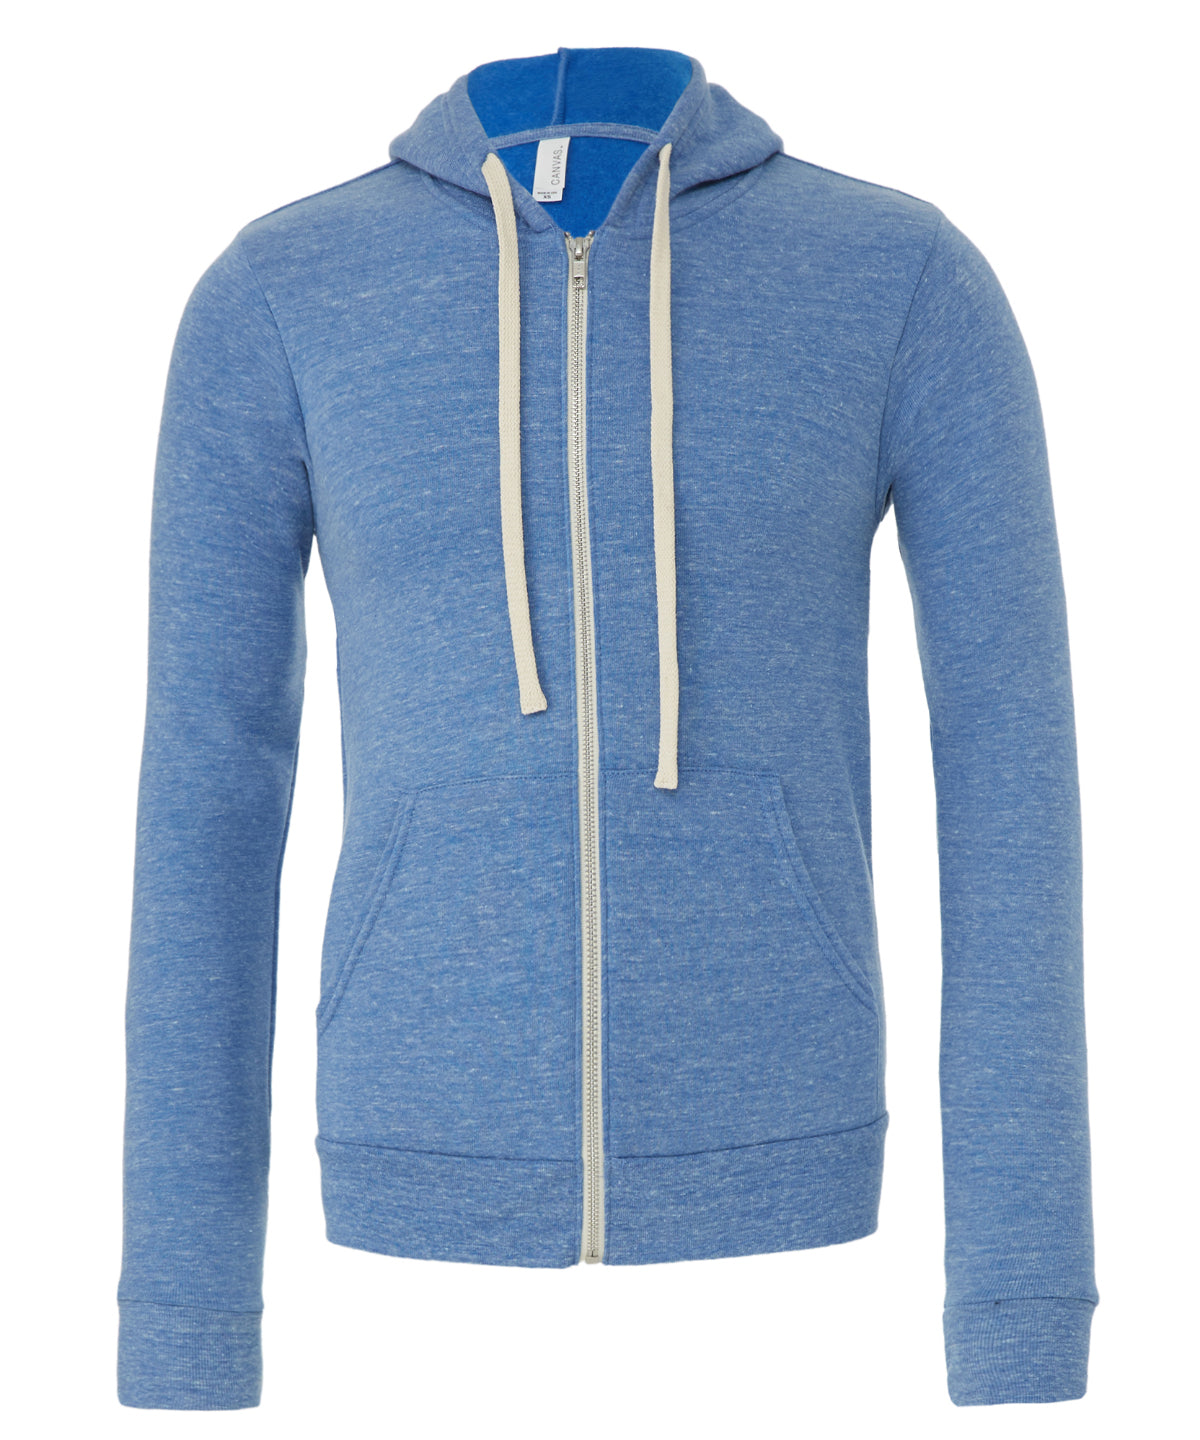 Personalised Hoodies - Mid Blue Bella Canvas Unisex triblend full zip hoodie